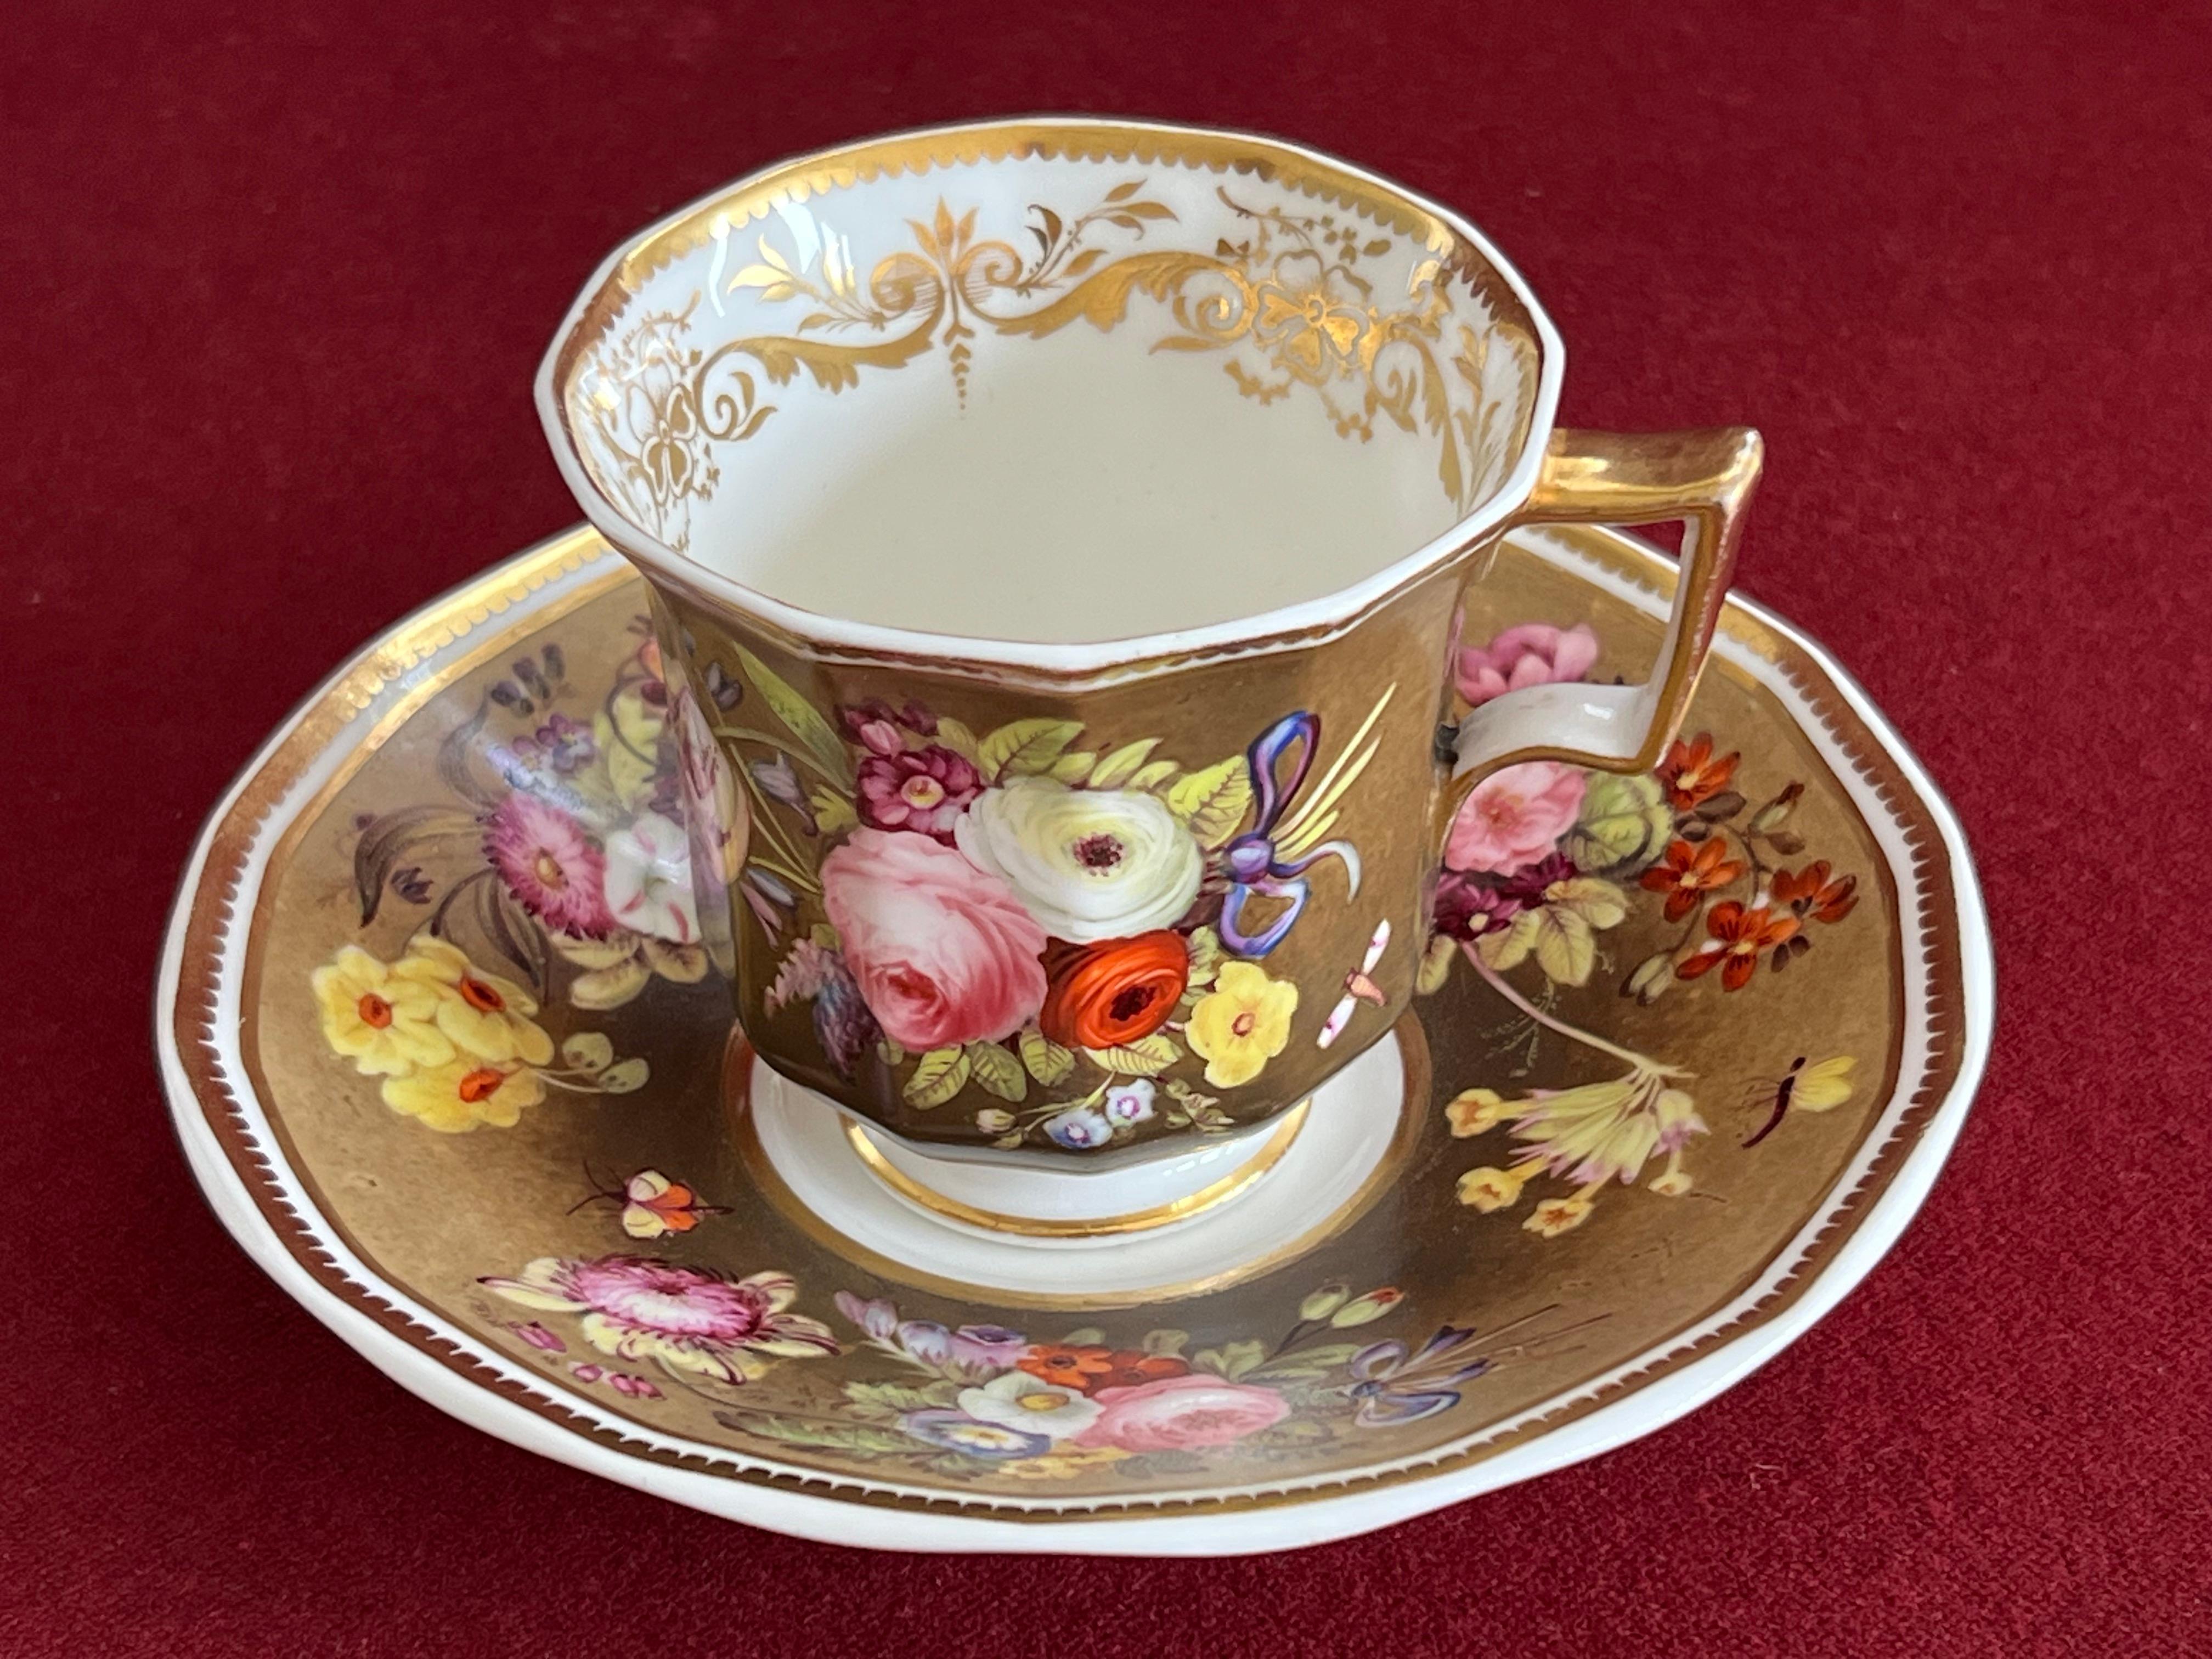 Tasse à café et soucoupe en porcelaine de Spode vers 1830. Bien que la tasse ait douze côtés, elle est toujours appelée 